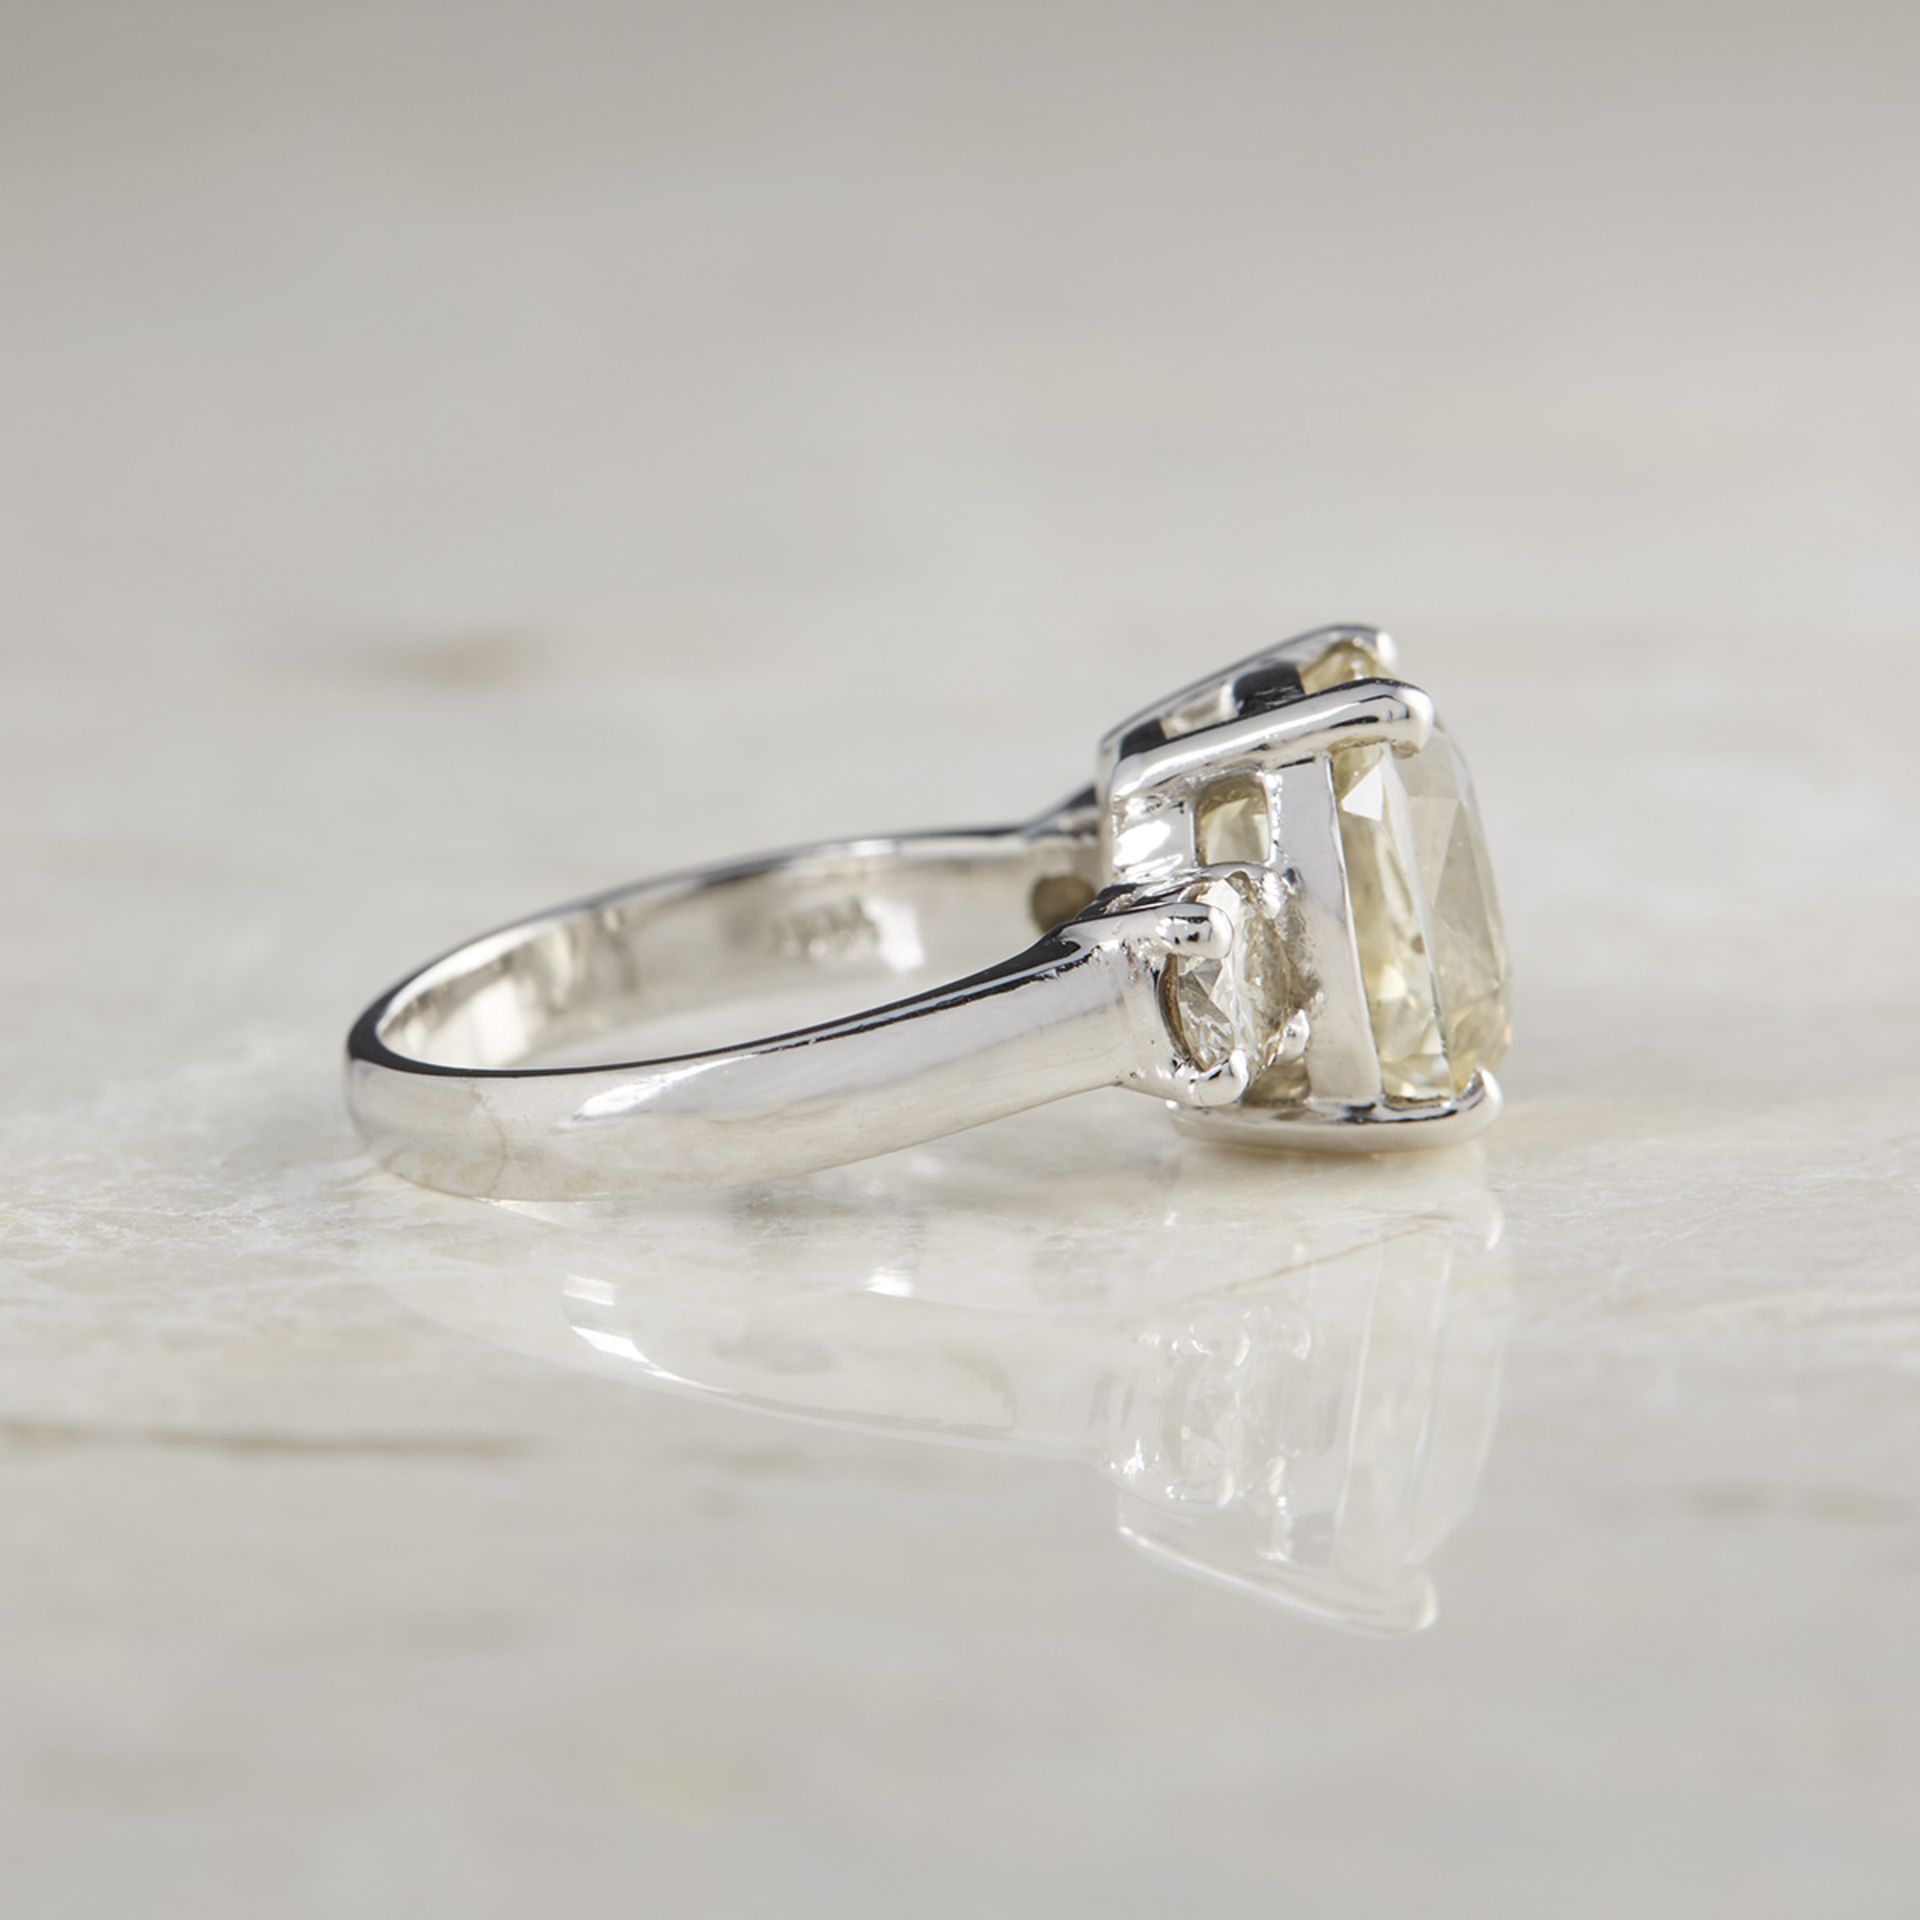 Platinum 6.07ct Yellow Sapphire & 0.68ct Diamond Ring - Image 4 of 8